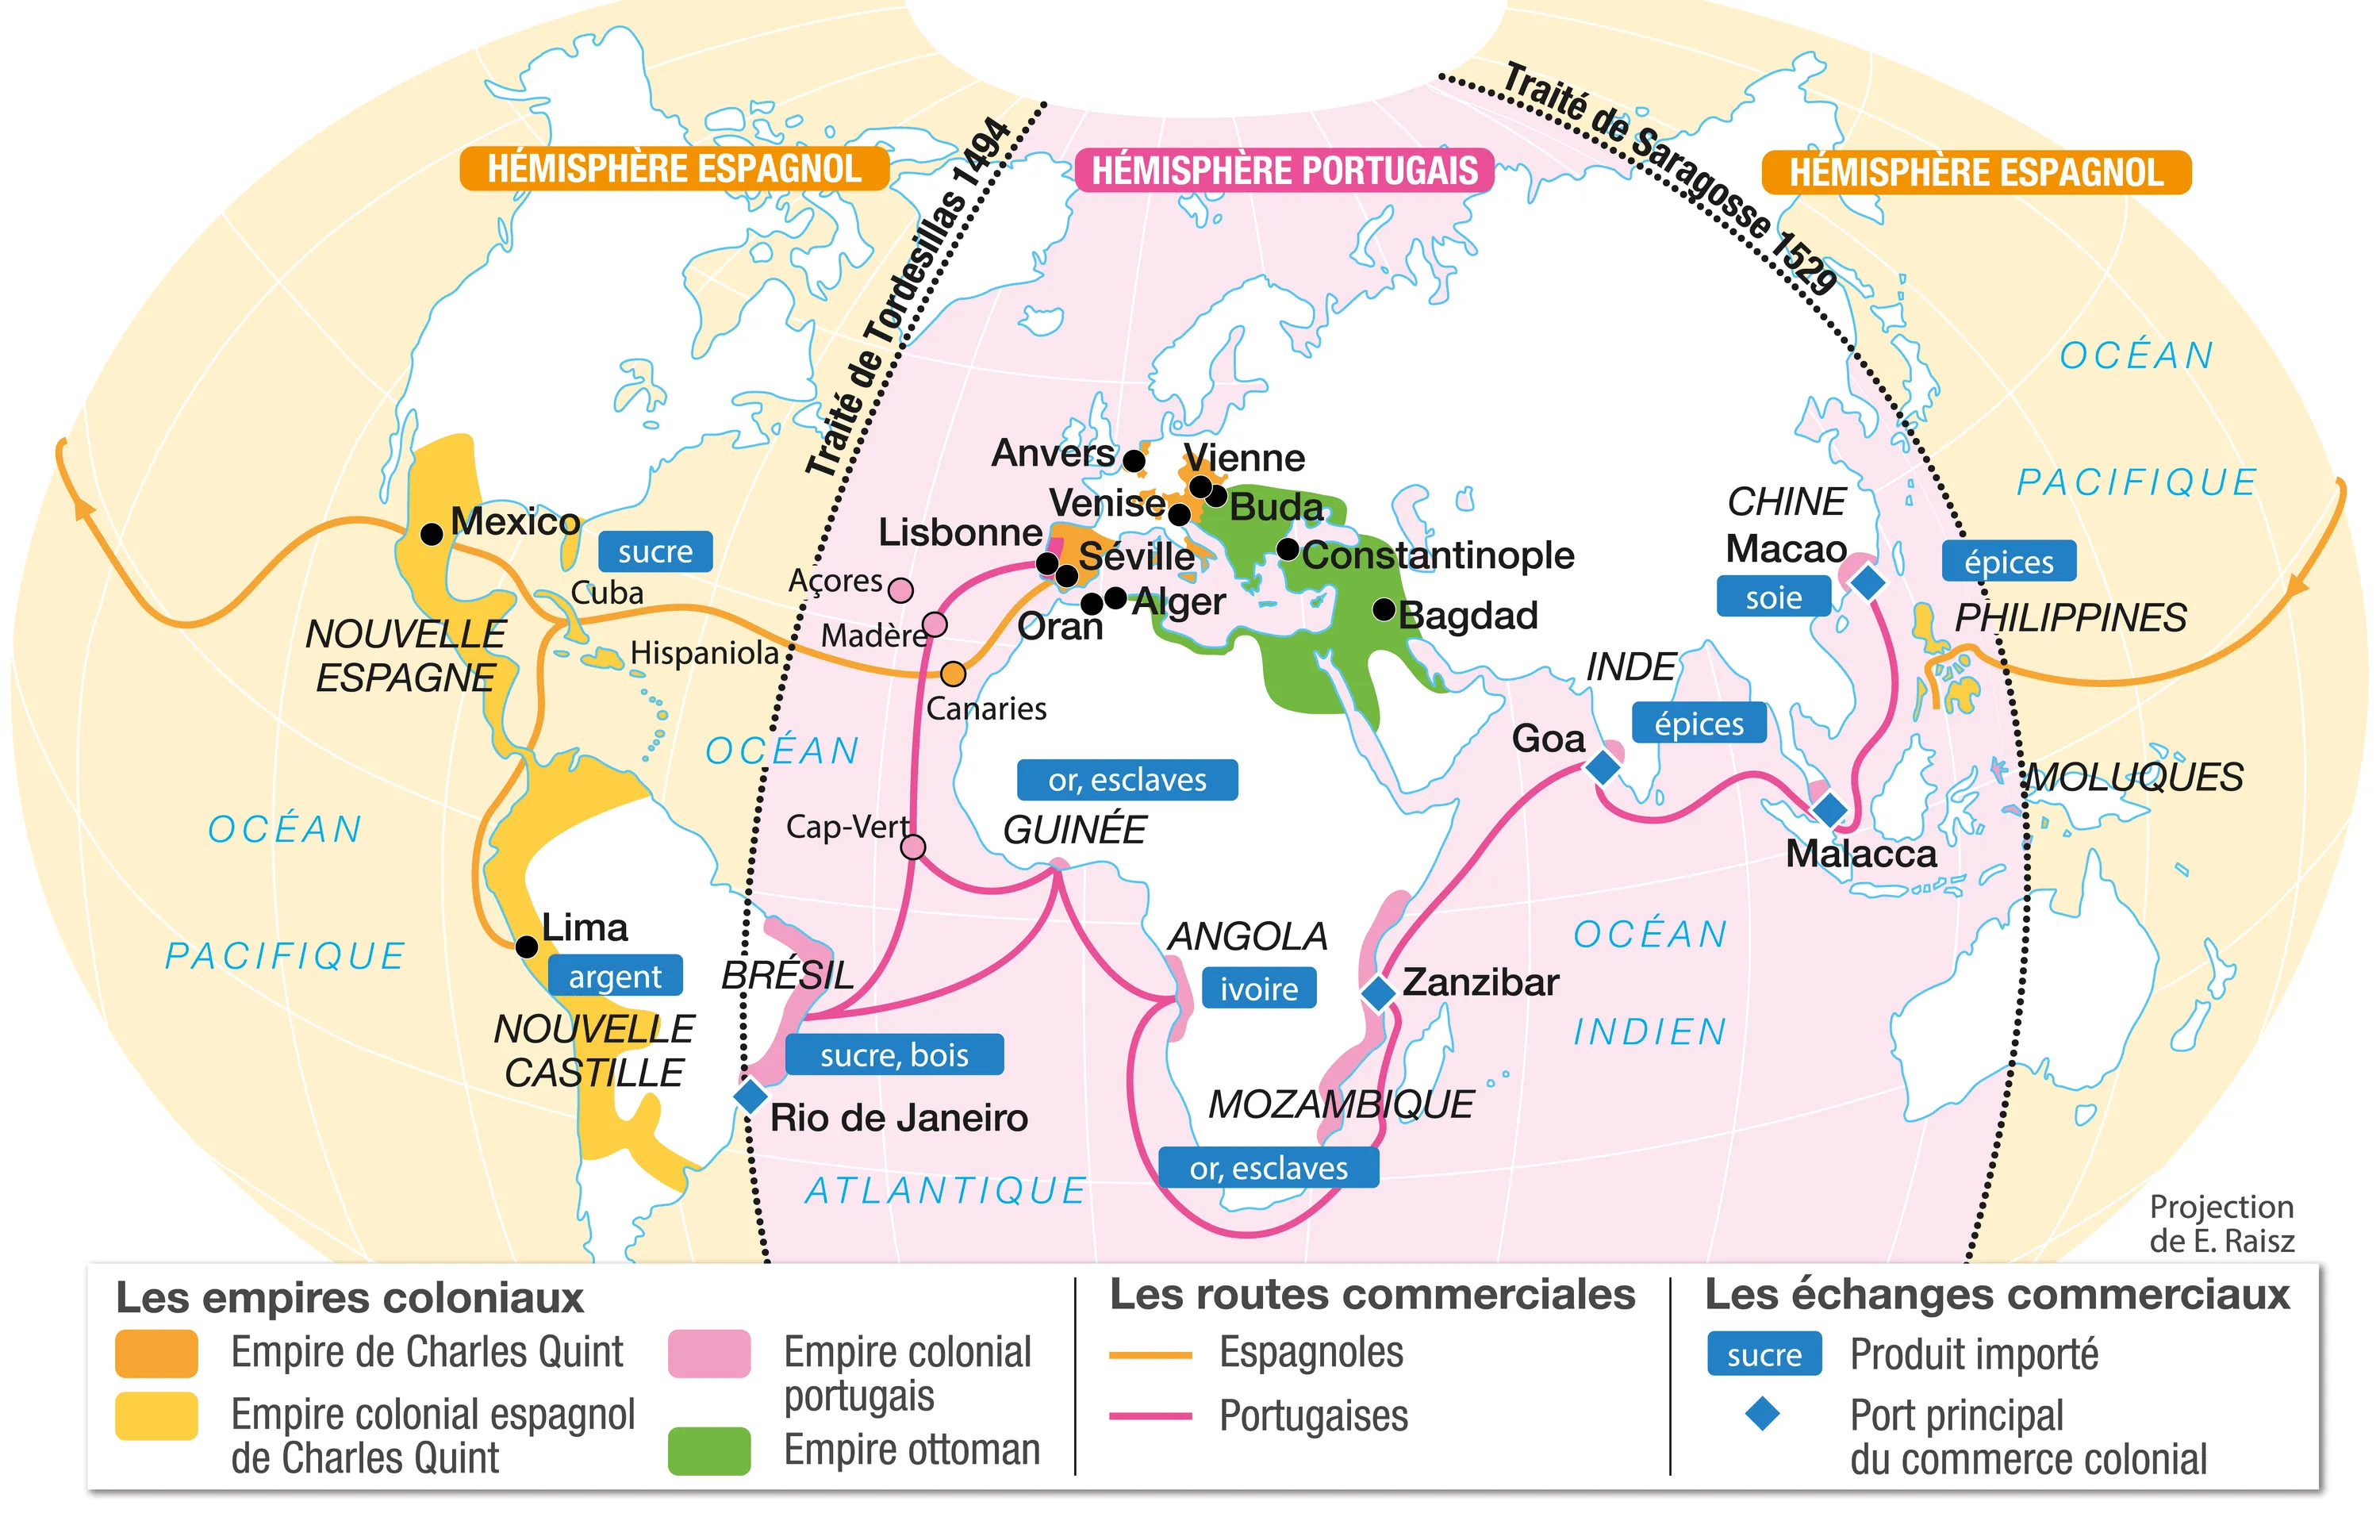 Doc. 1 : L'élargissement du monde et les empires coloniaux au XVIᵉ siècle